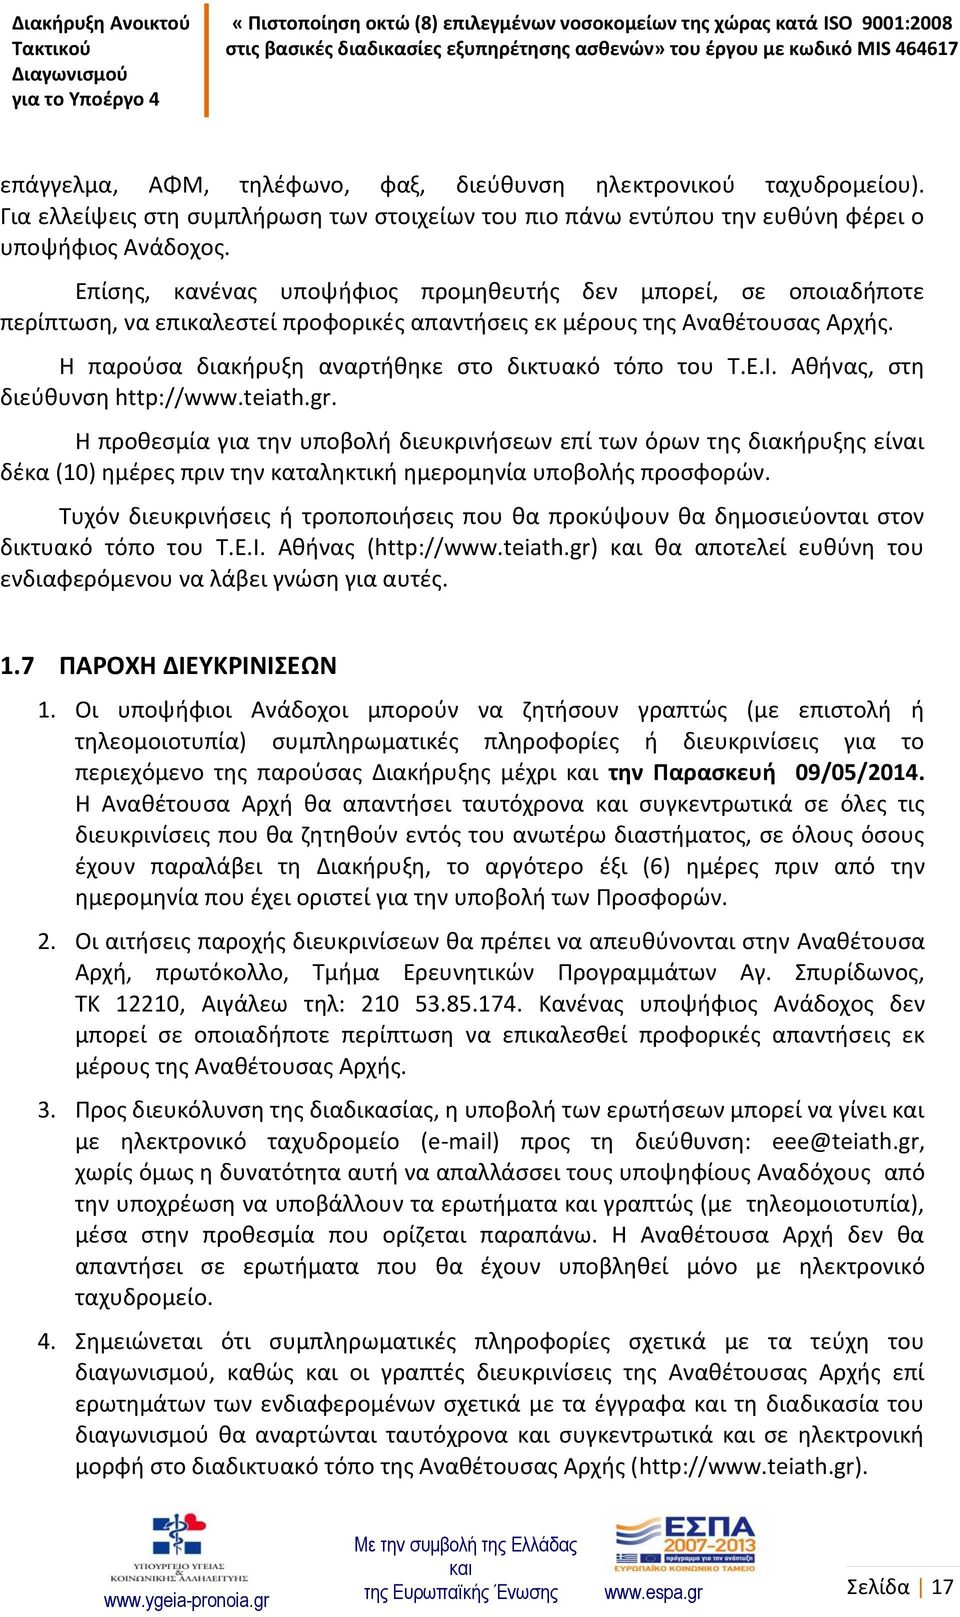 Η παρούσα διακήρυξη αναρτήθηκε στο δικτυακό τόπο του Τ.Ε.Ι. Αθήνας, στη διεύθυνση http://www.teiath.gr.